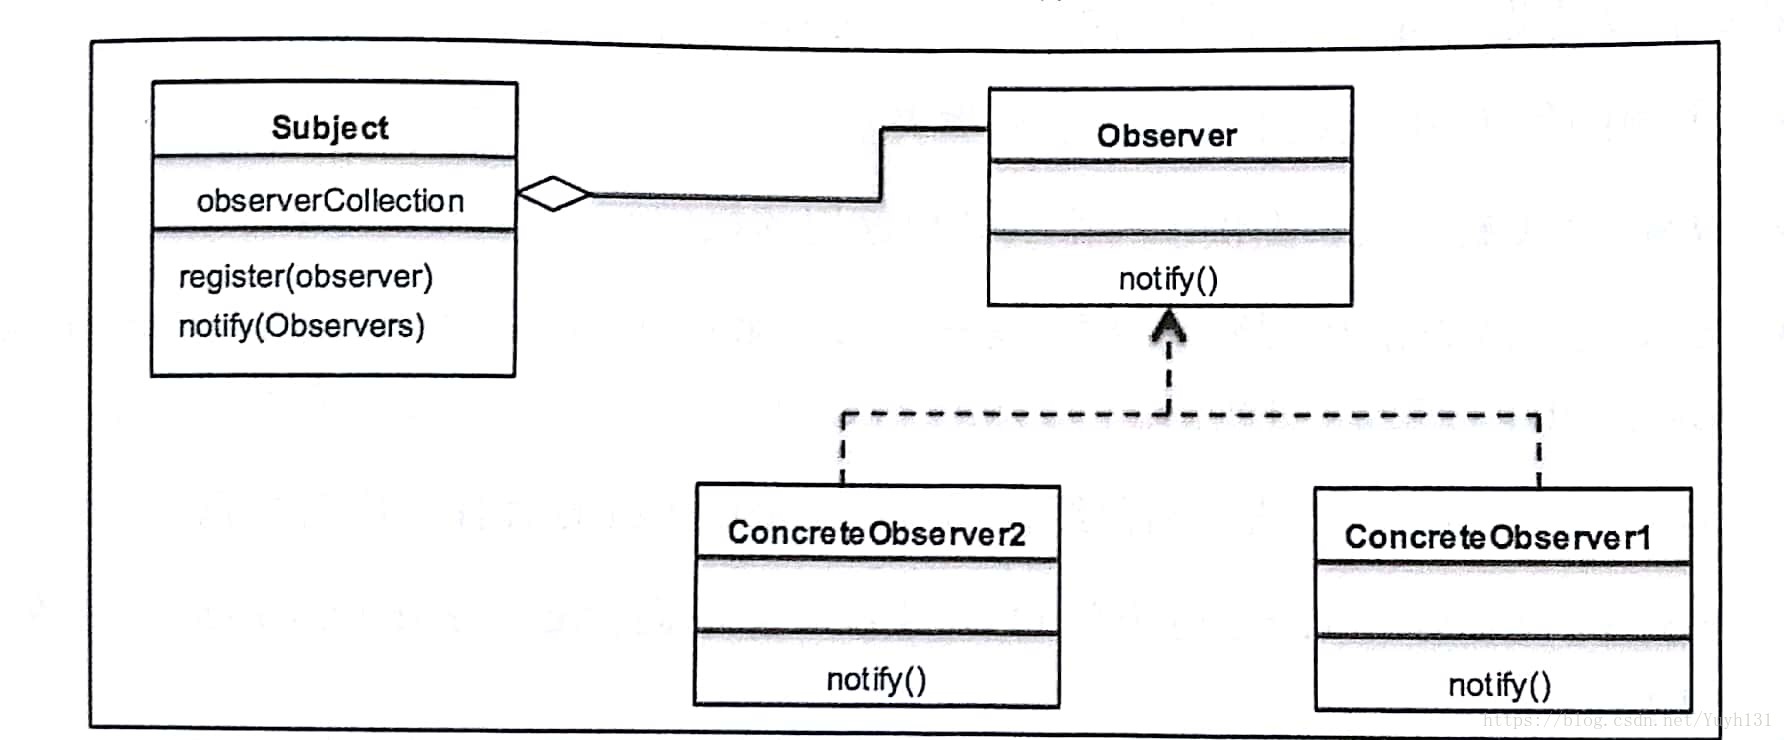 观察者模式UML类图